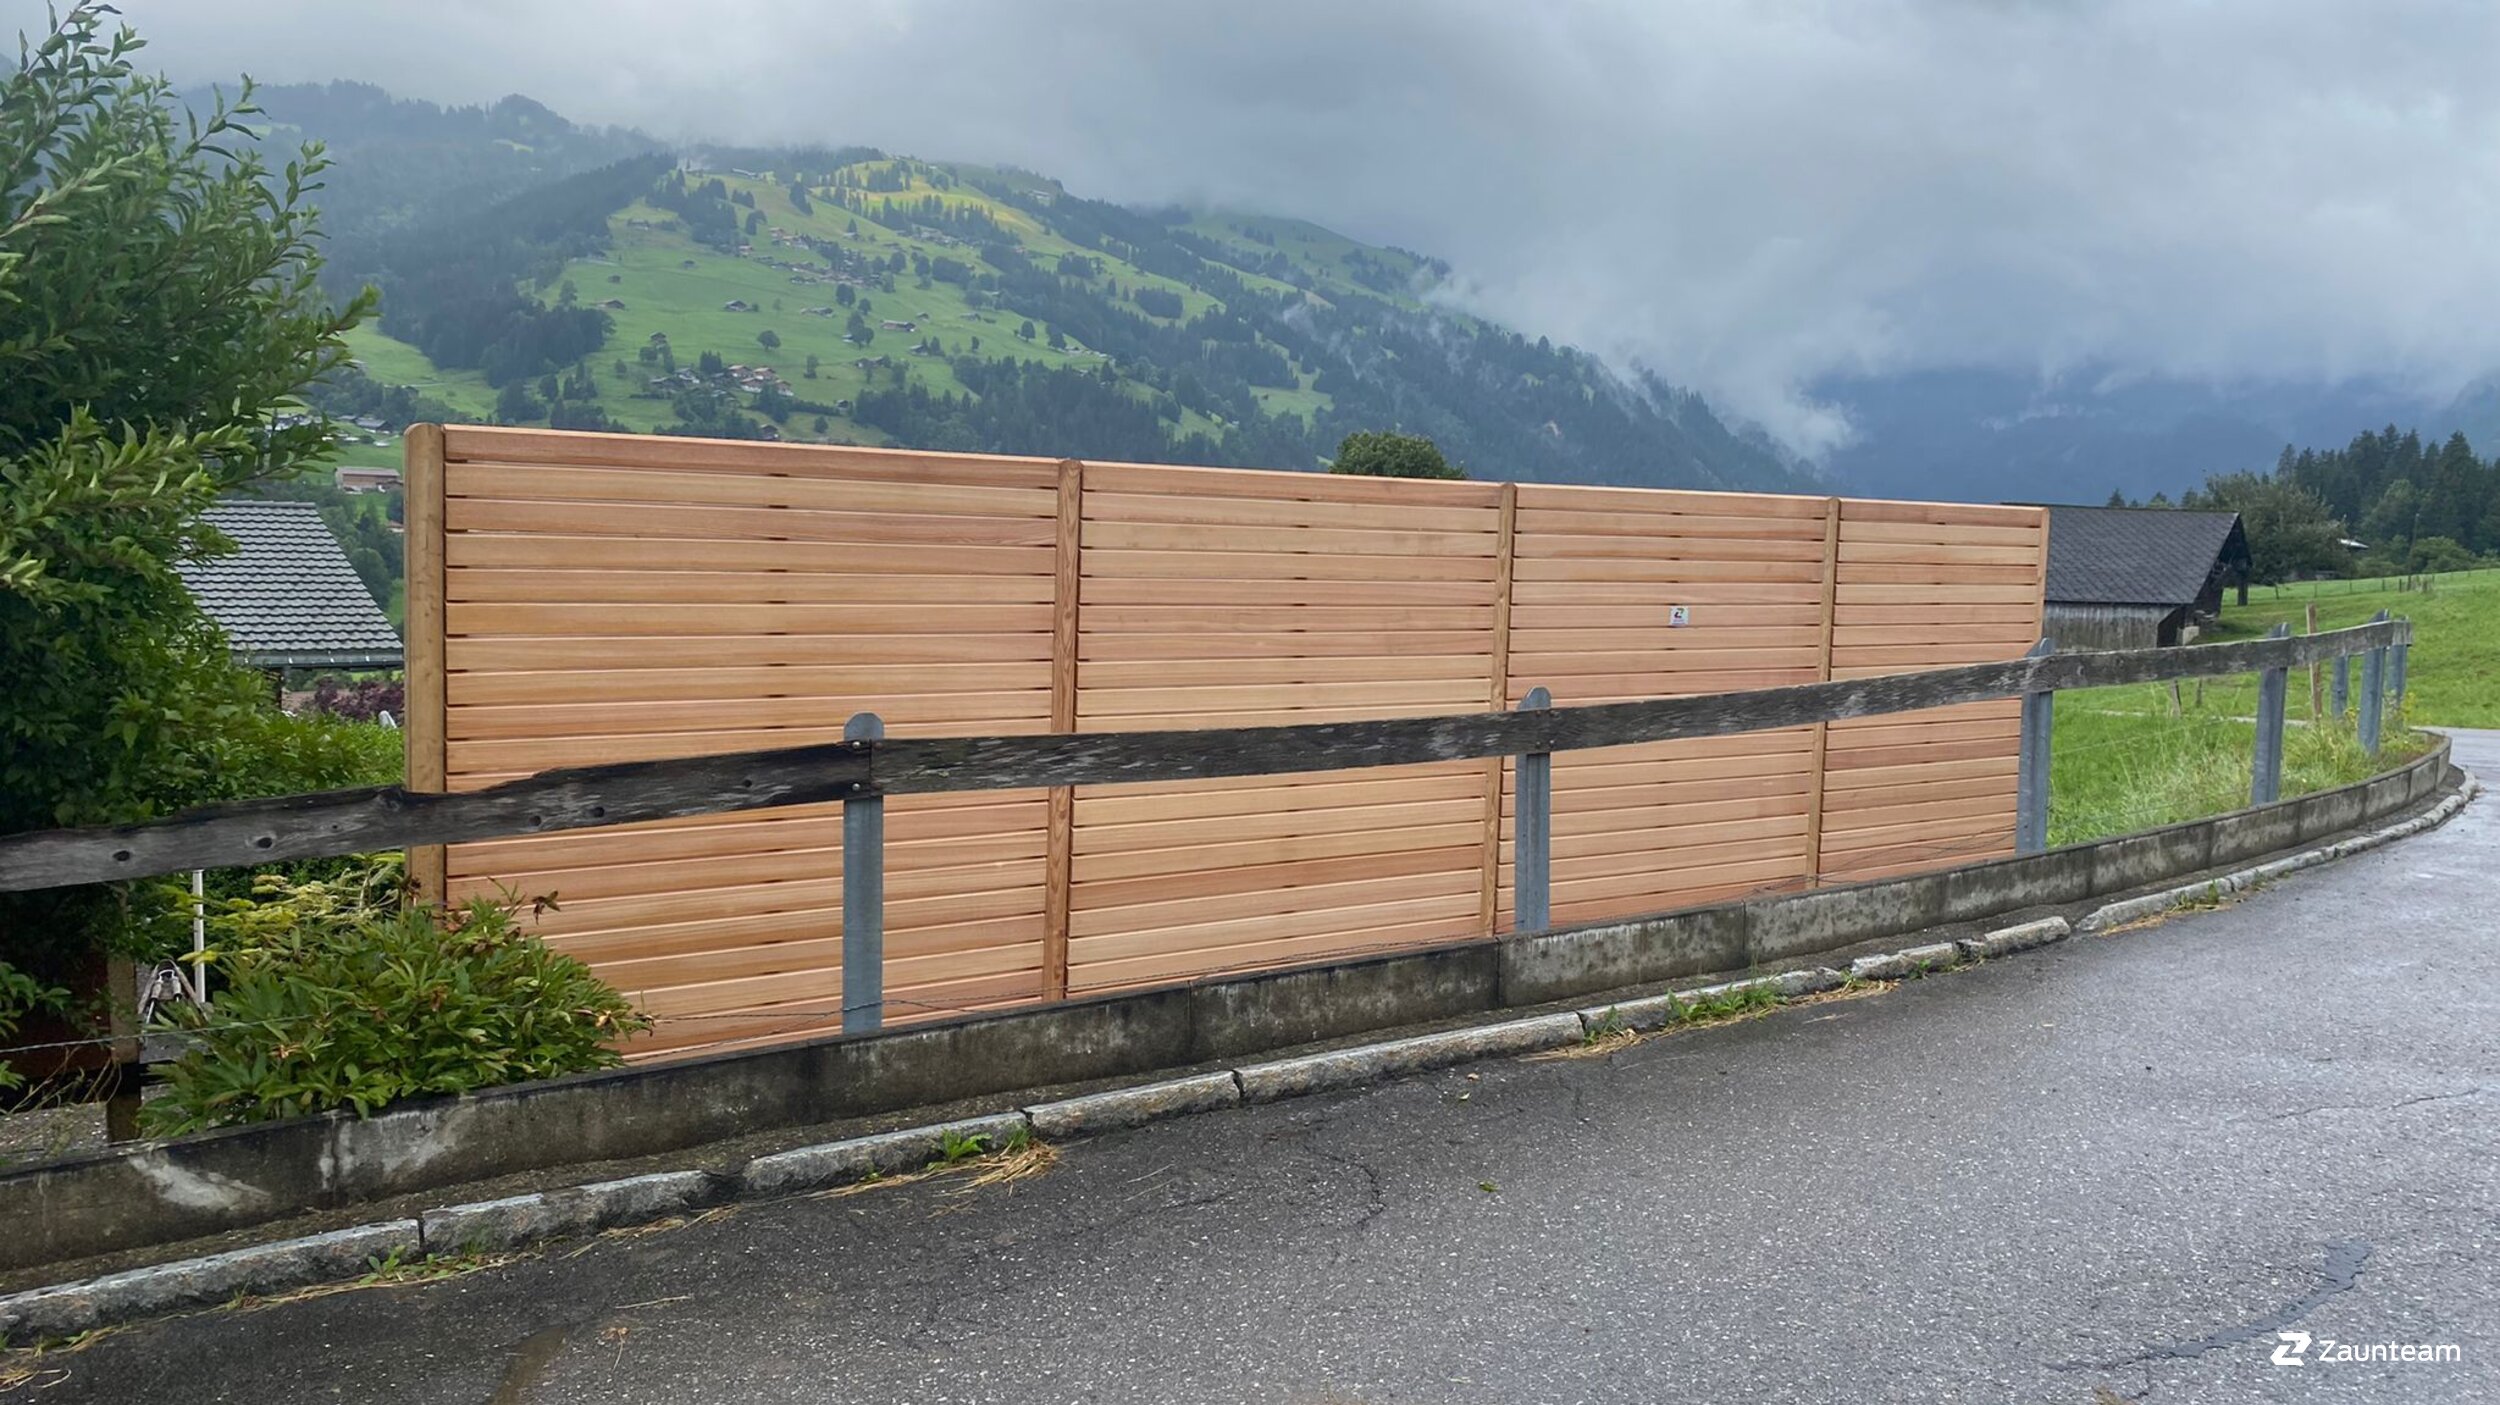 Protection brise-vue en bois de 2021 à 3775 Lenk im Simmental Suisse de Zaunteam Berner Oberland.